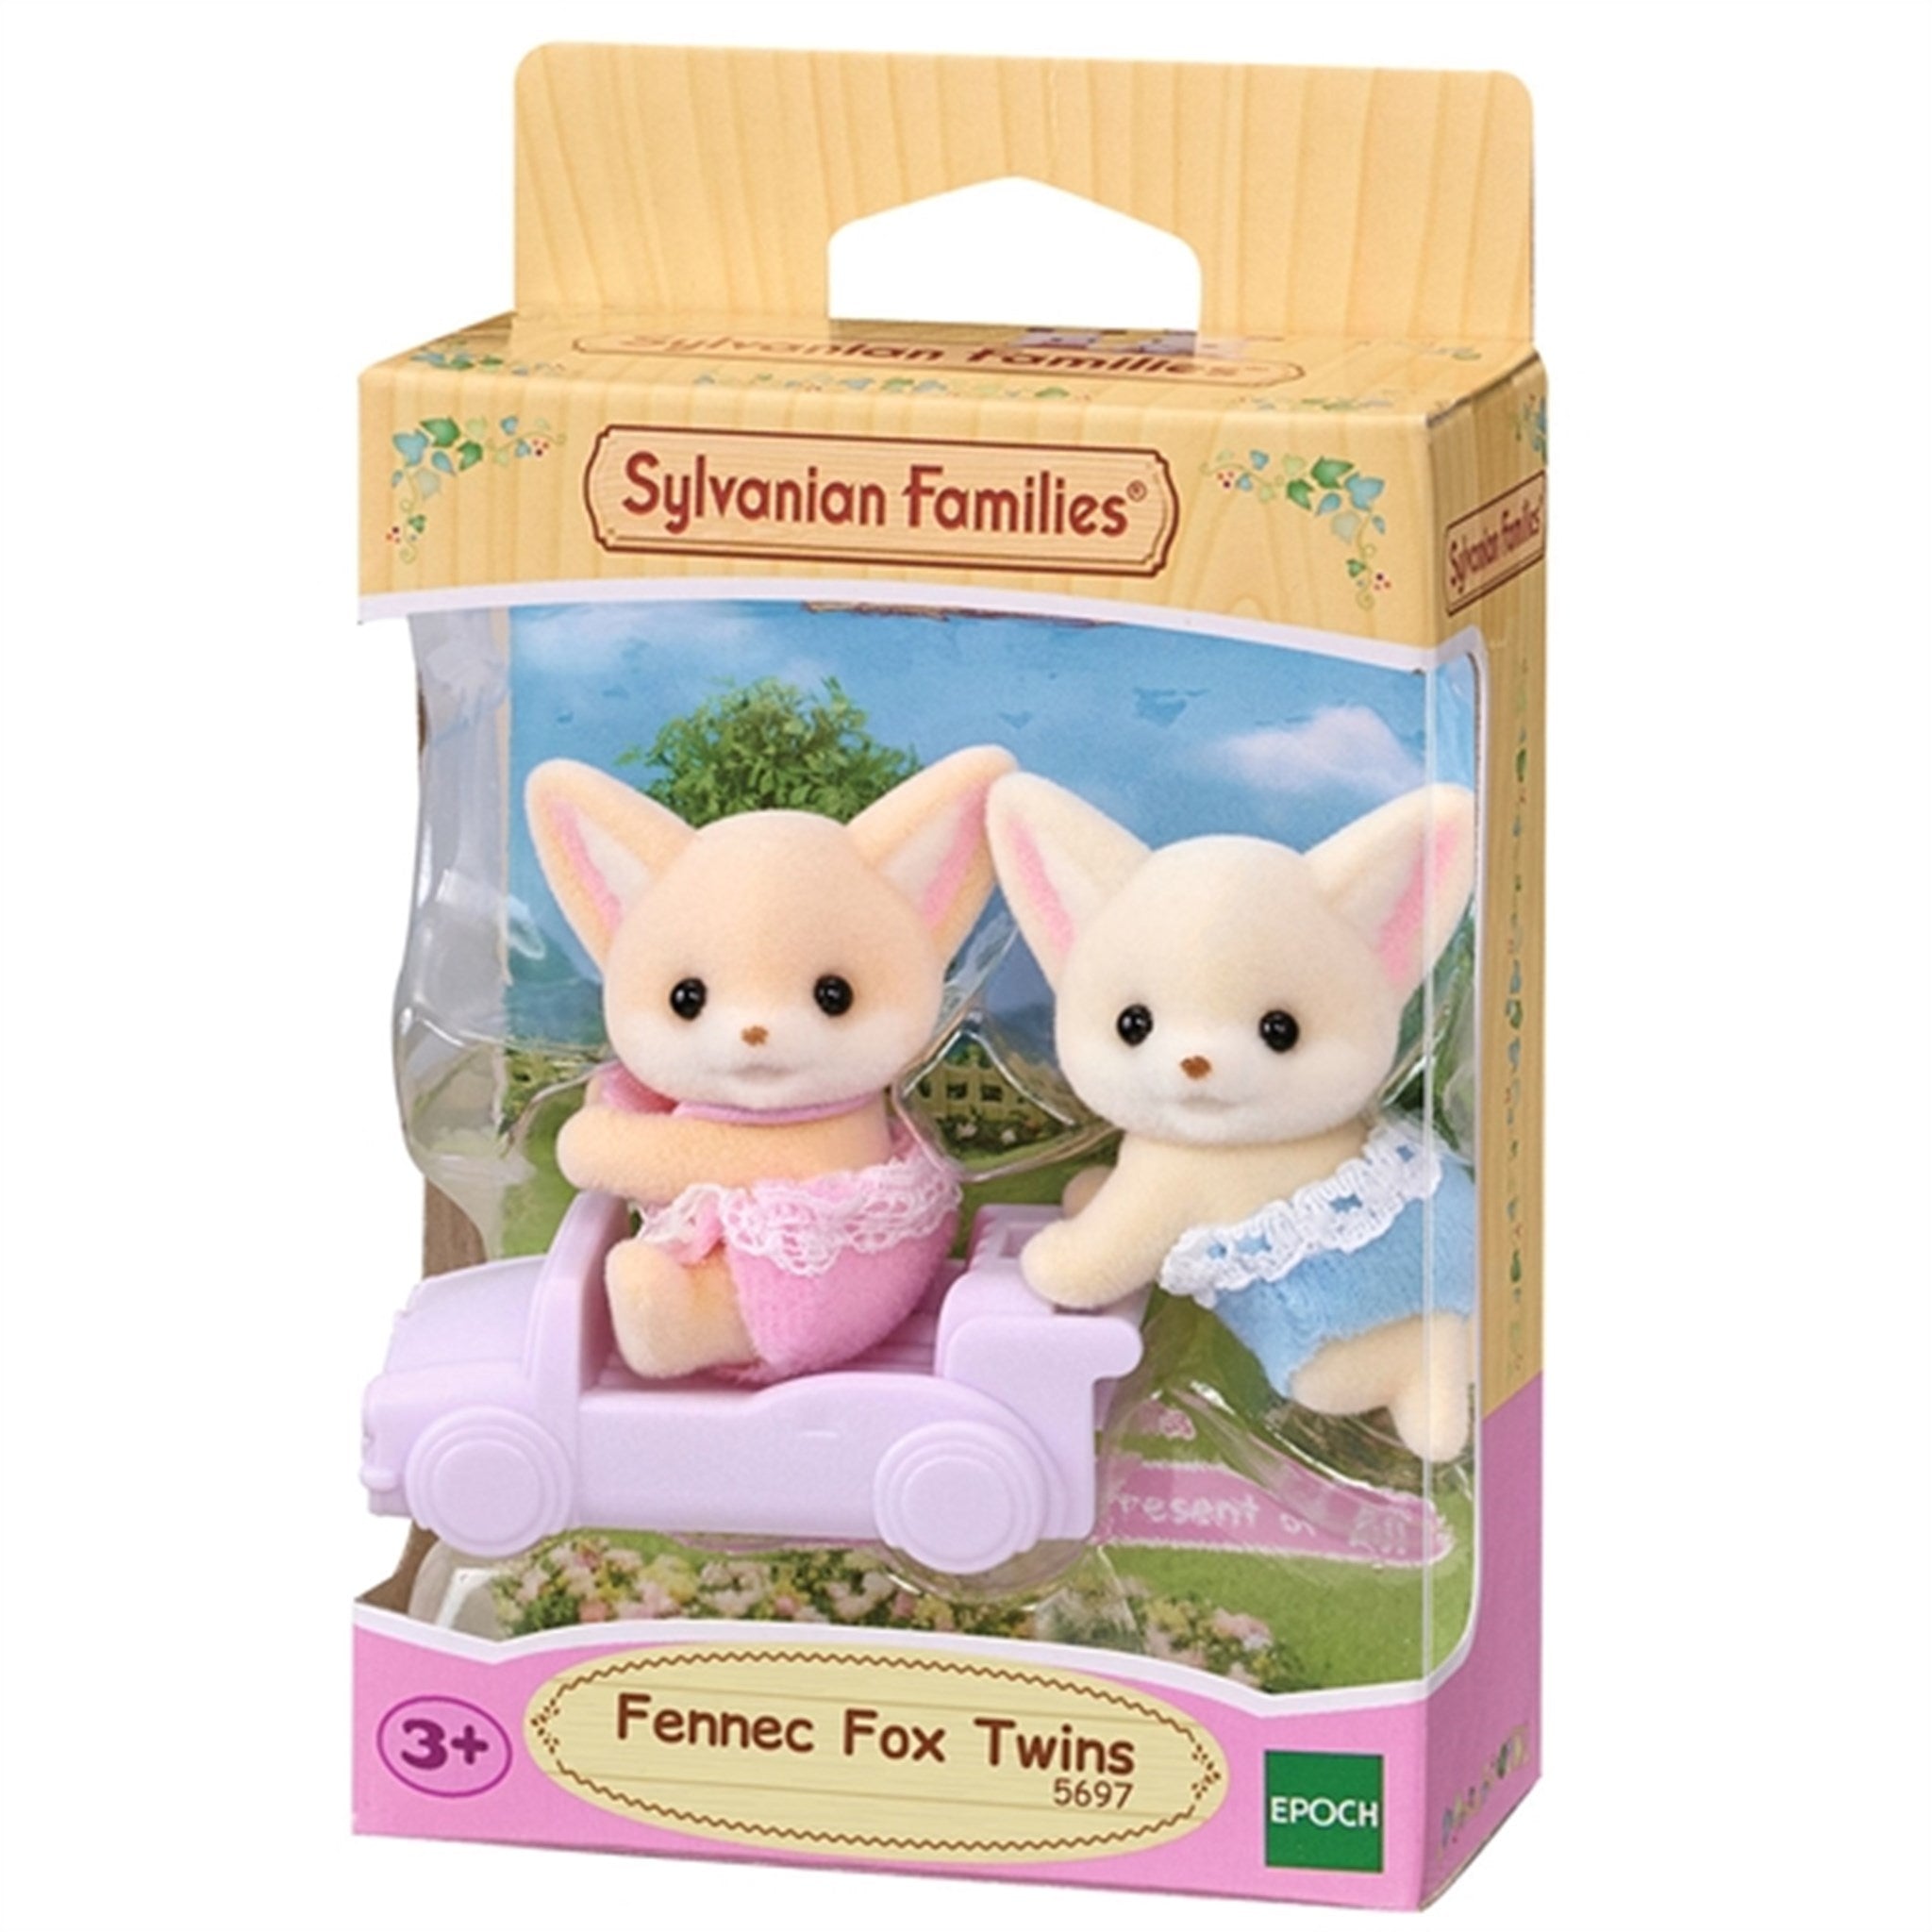 Sylvanian Families® Fennec Fox Twins